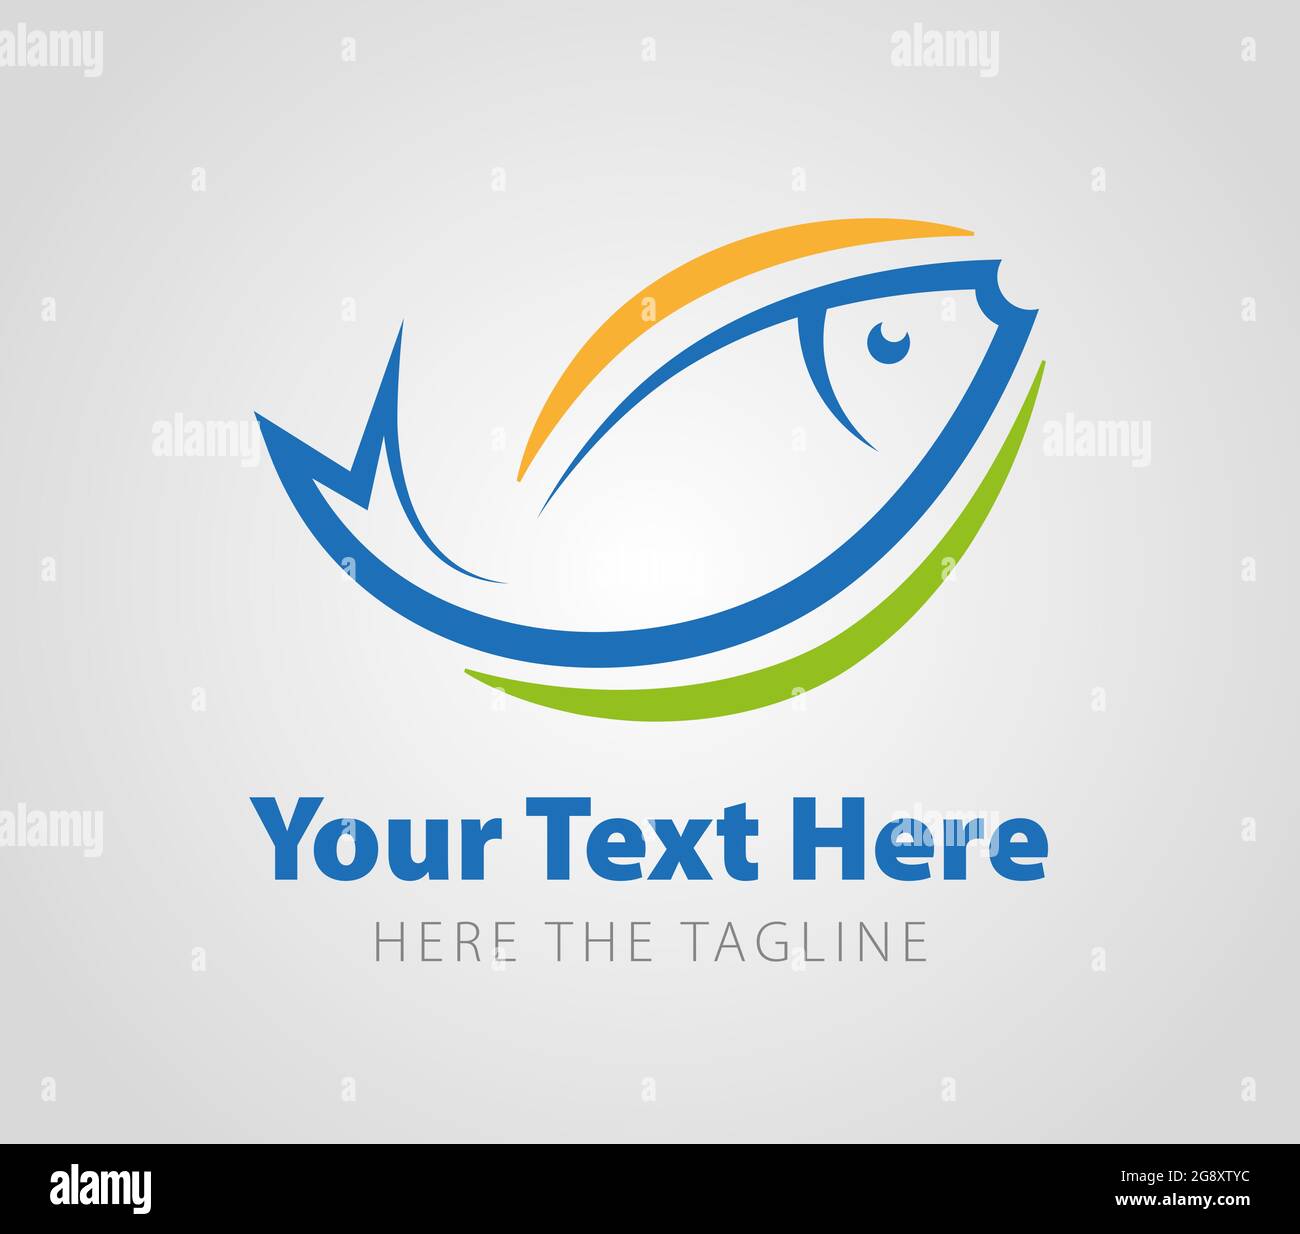 Un logo prêt à l'emploi sous forme de poisson joyeux coloré. Logo bleu jaune vert poisson Illustration de Vecteur